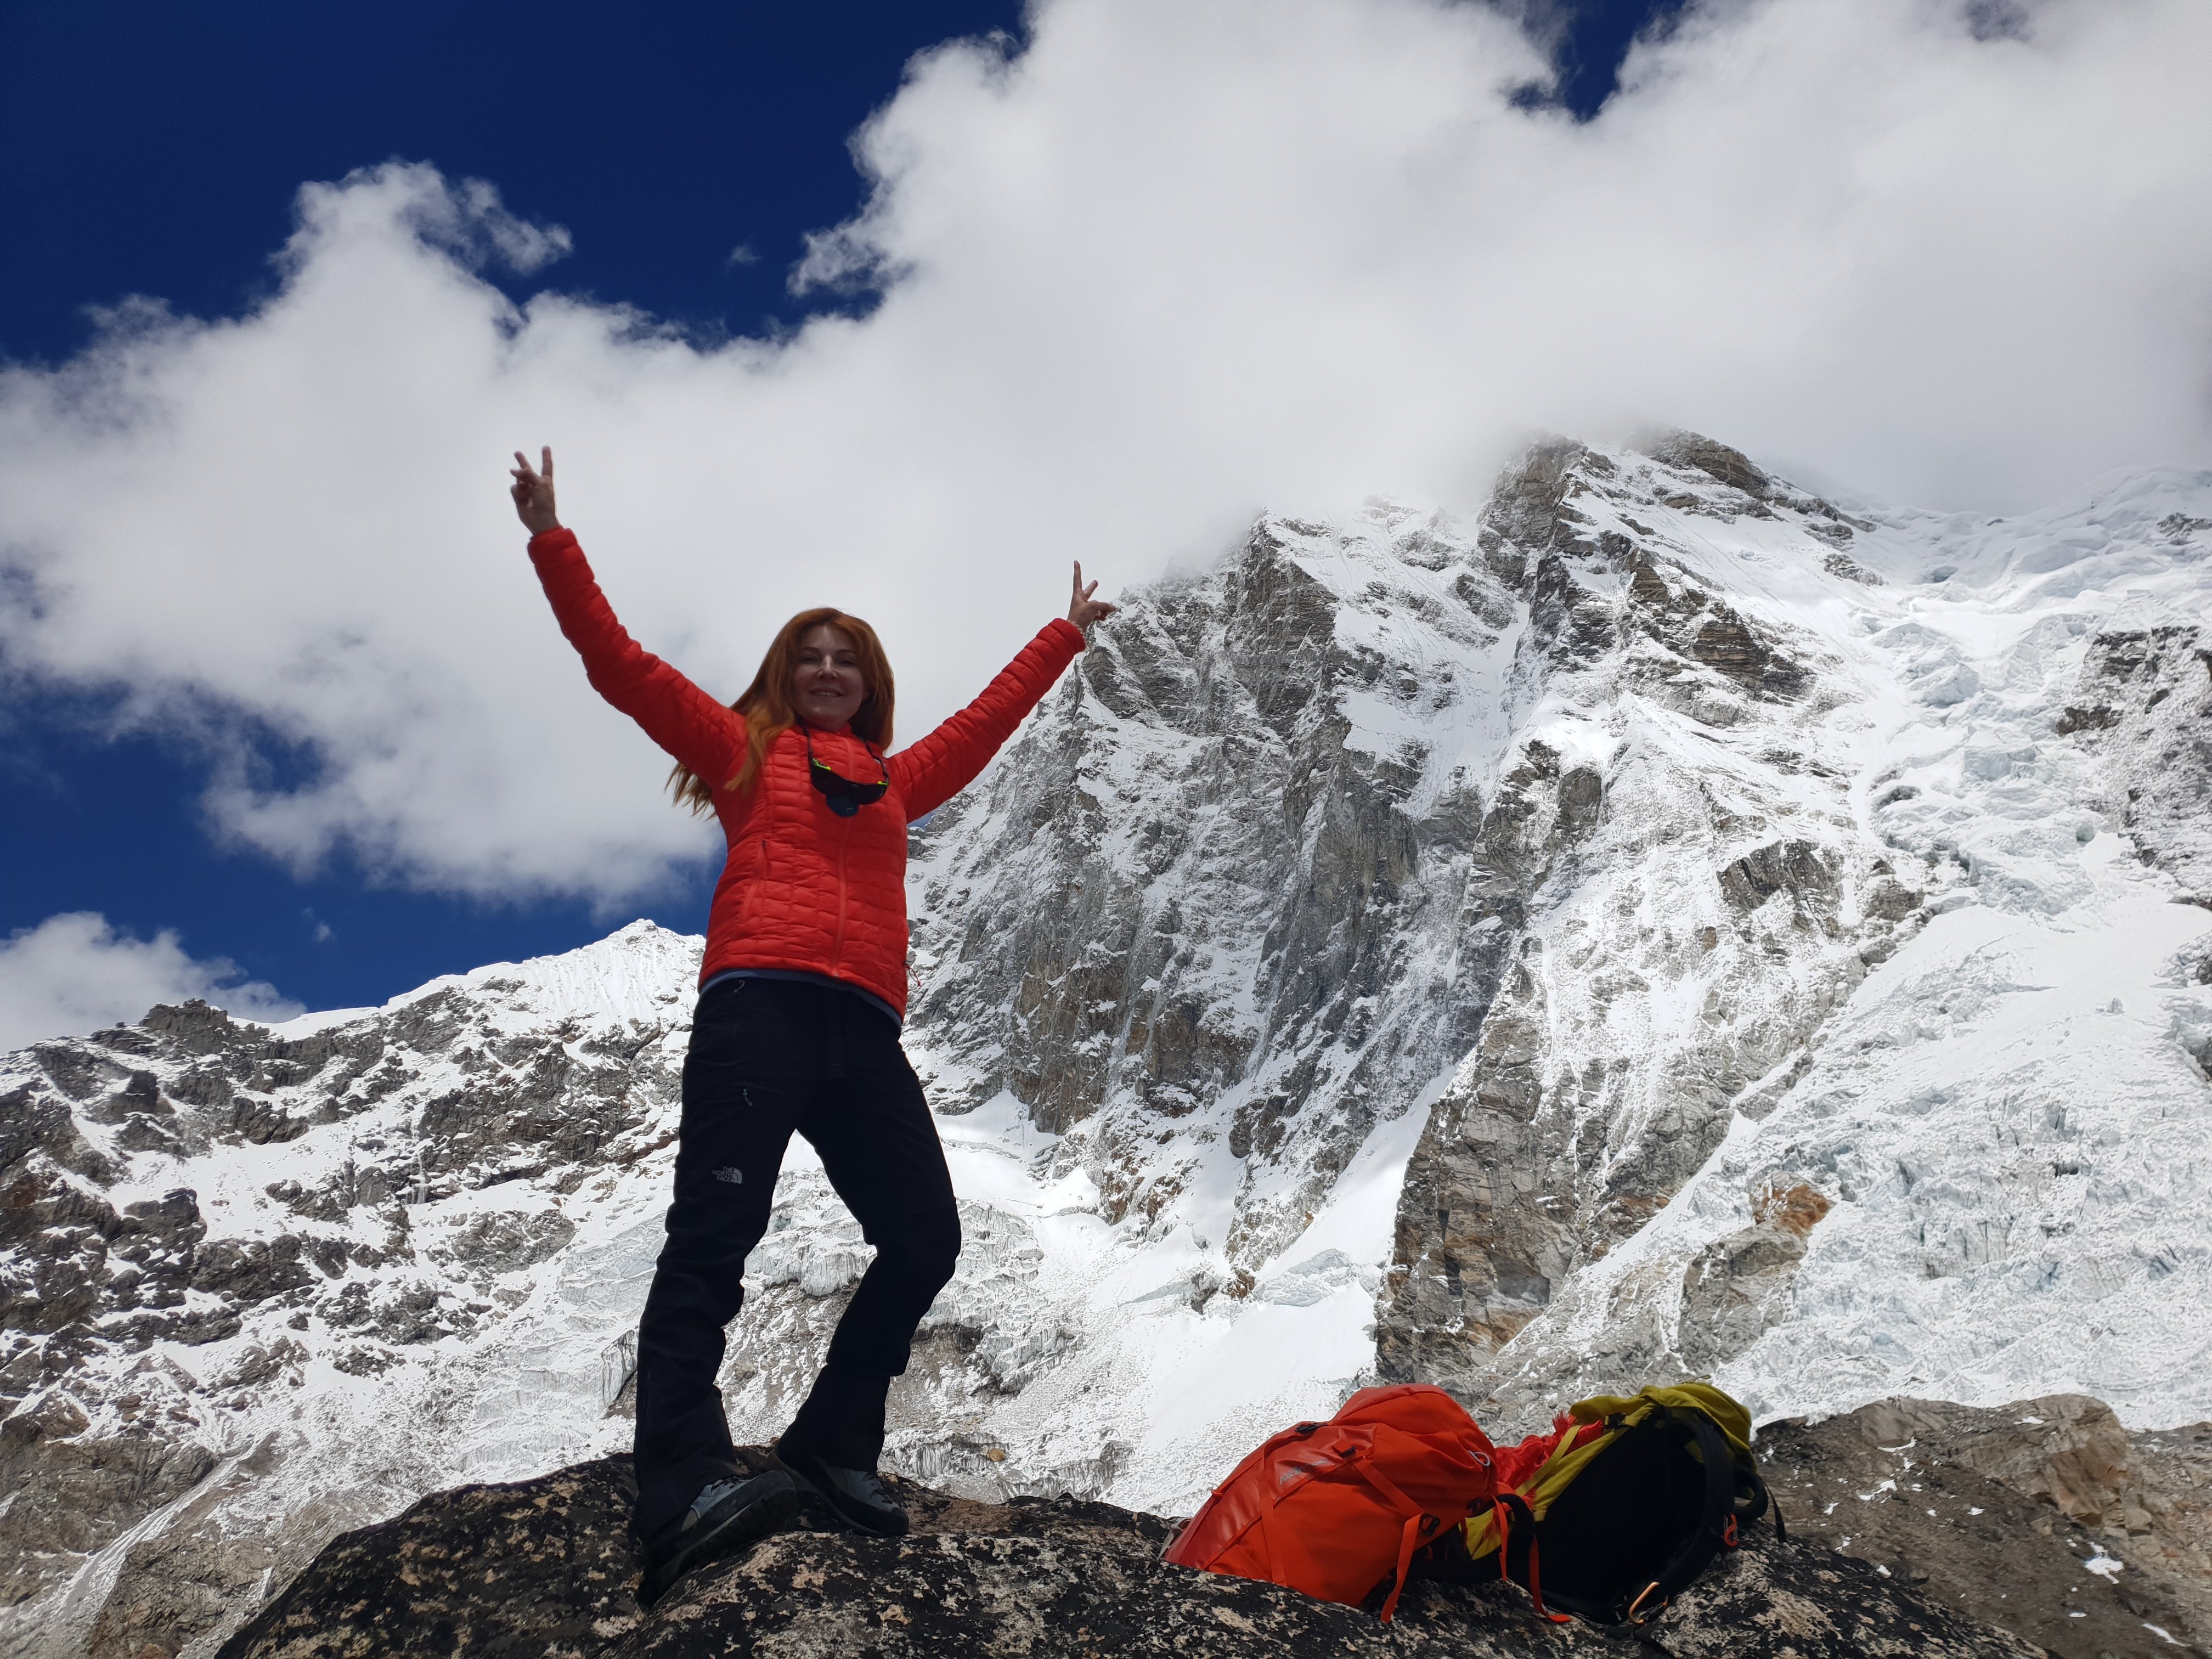 Βανέσα Αρχοντίδου αλπινίστρια ξεκινά για την Ανταρκτική με στόχο την ευαισθητοποίηση για την Κλιματική κρίση 2